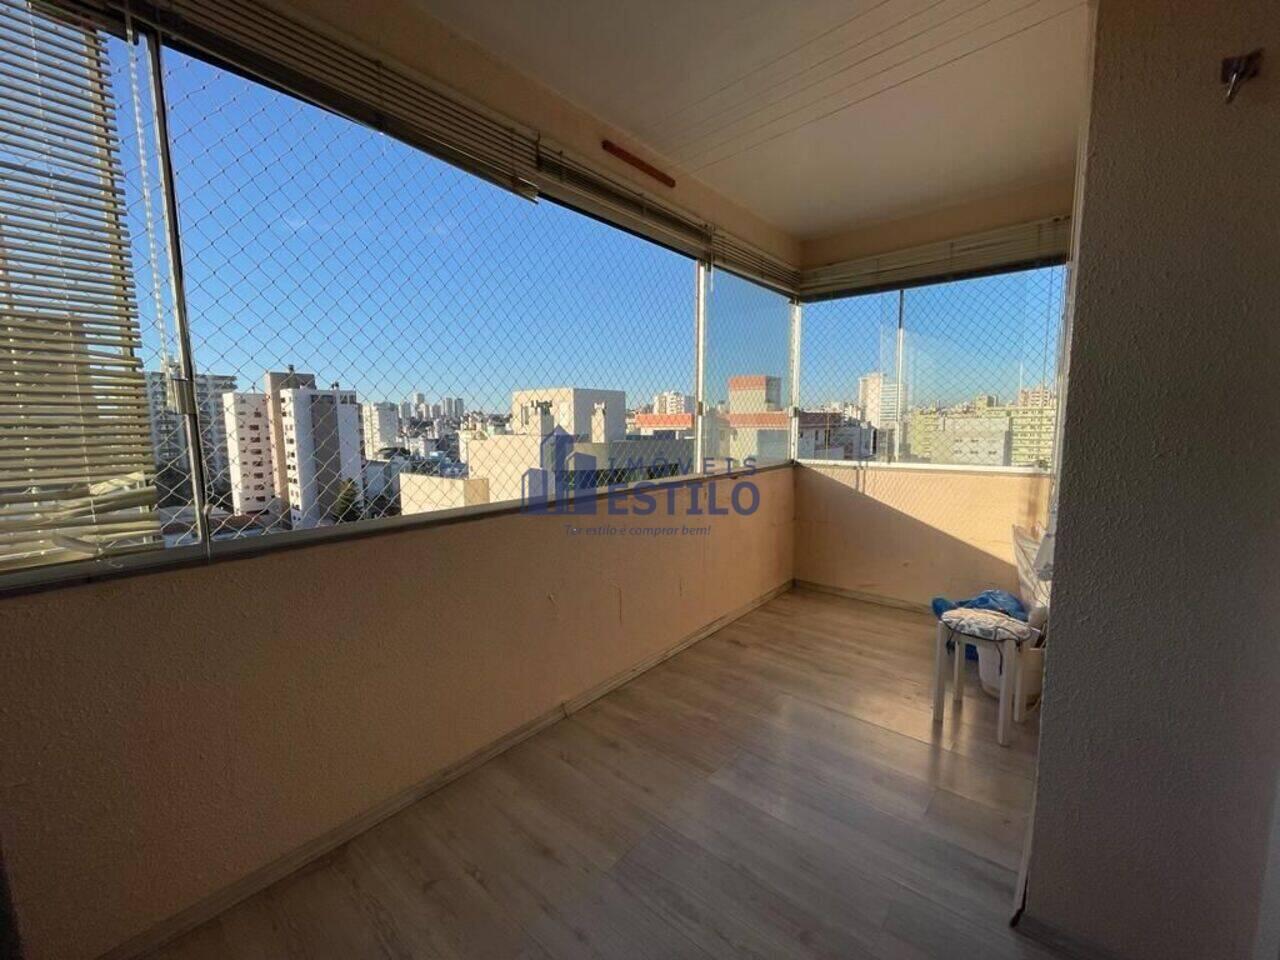 Apartamento São Pelegrino, Caxias do Sul - RS